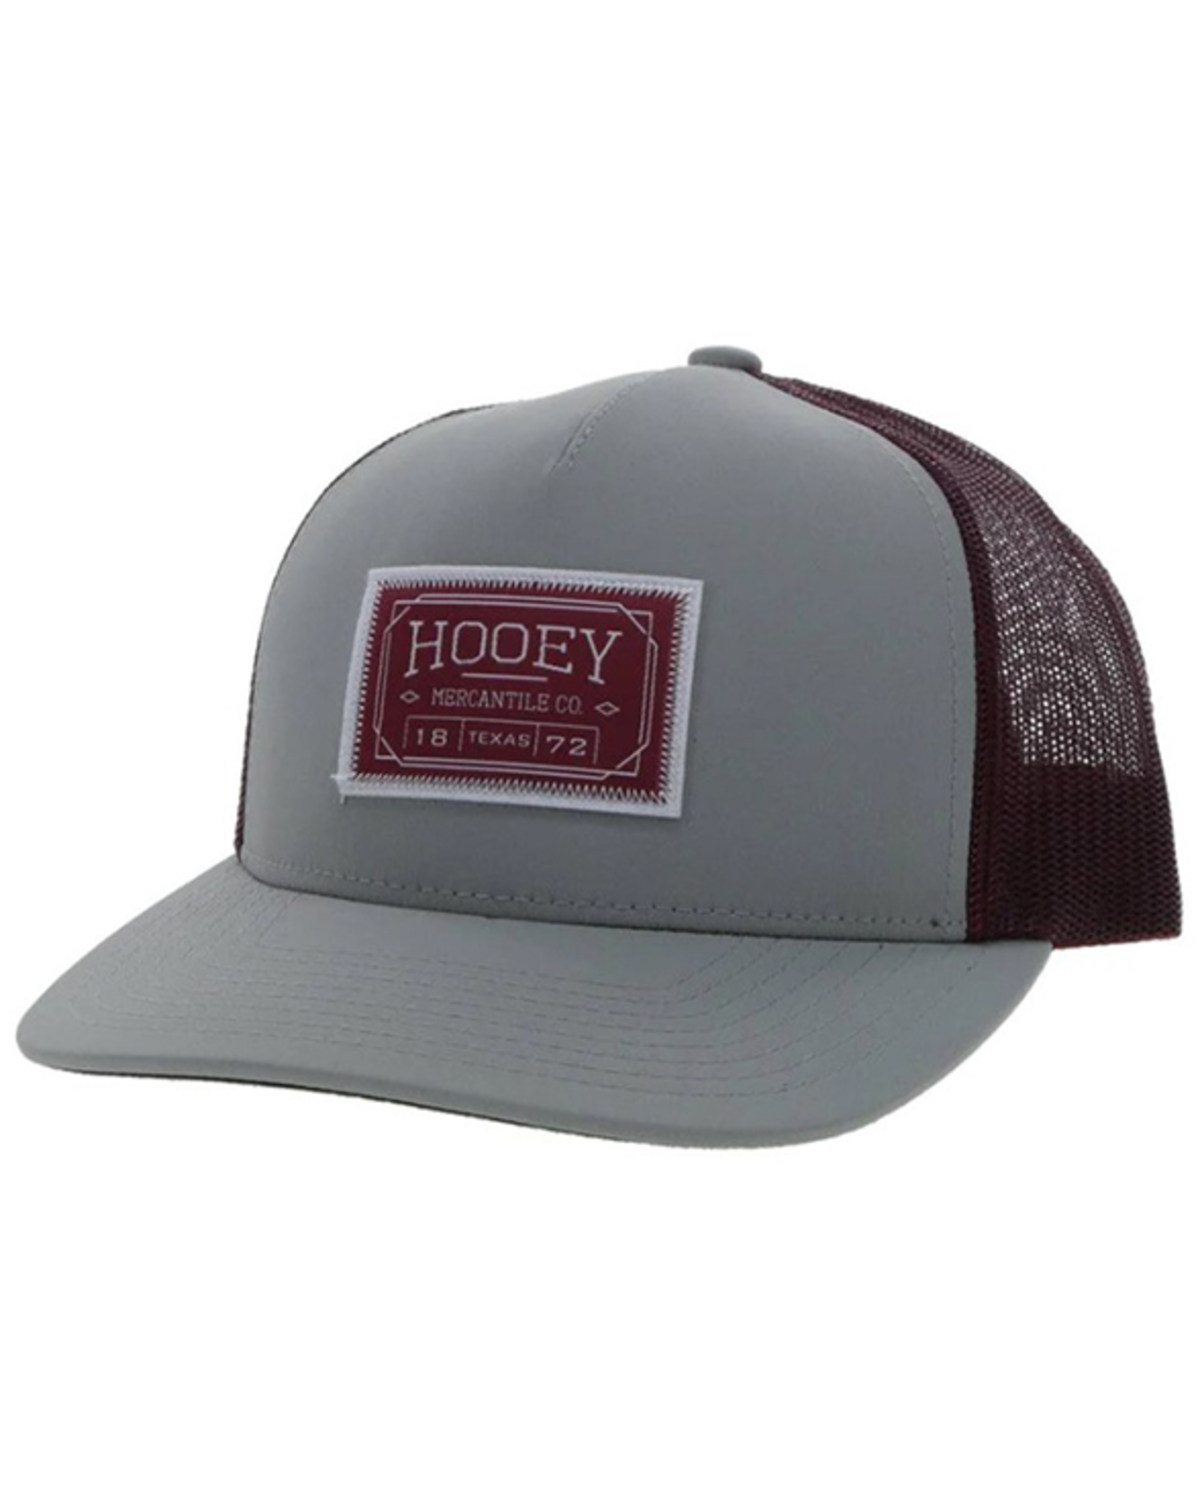 Hooey Men's Logo Trucker Cap